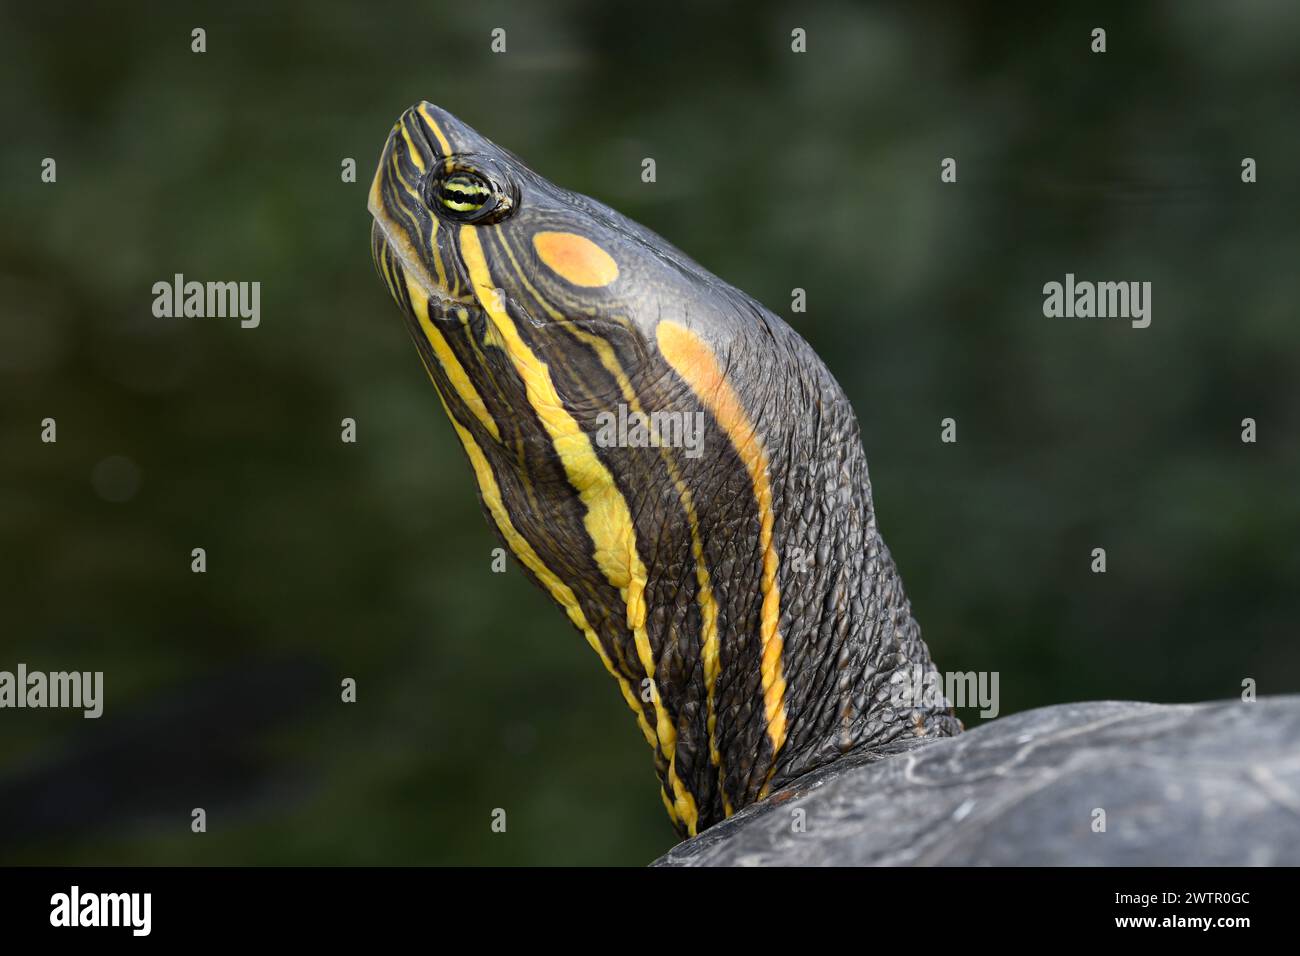 Il cursore dalle orecchie rosse (Trachemys scripta elegans) è una tartaruga originaria degli Stati Uniti midwest e del Messico settentrionale, ma utilizzata come animale domestico in molti paesi. H Foto Stock